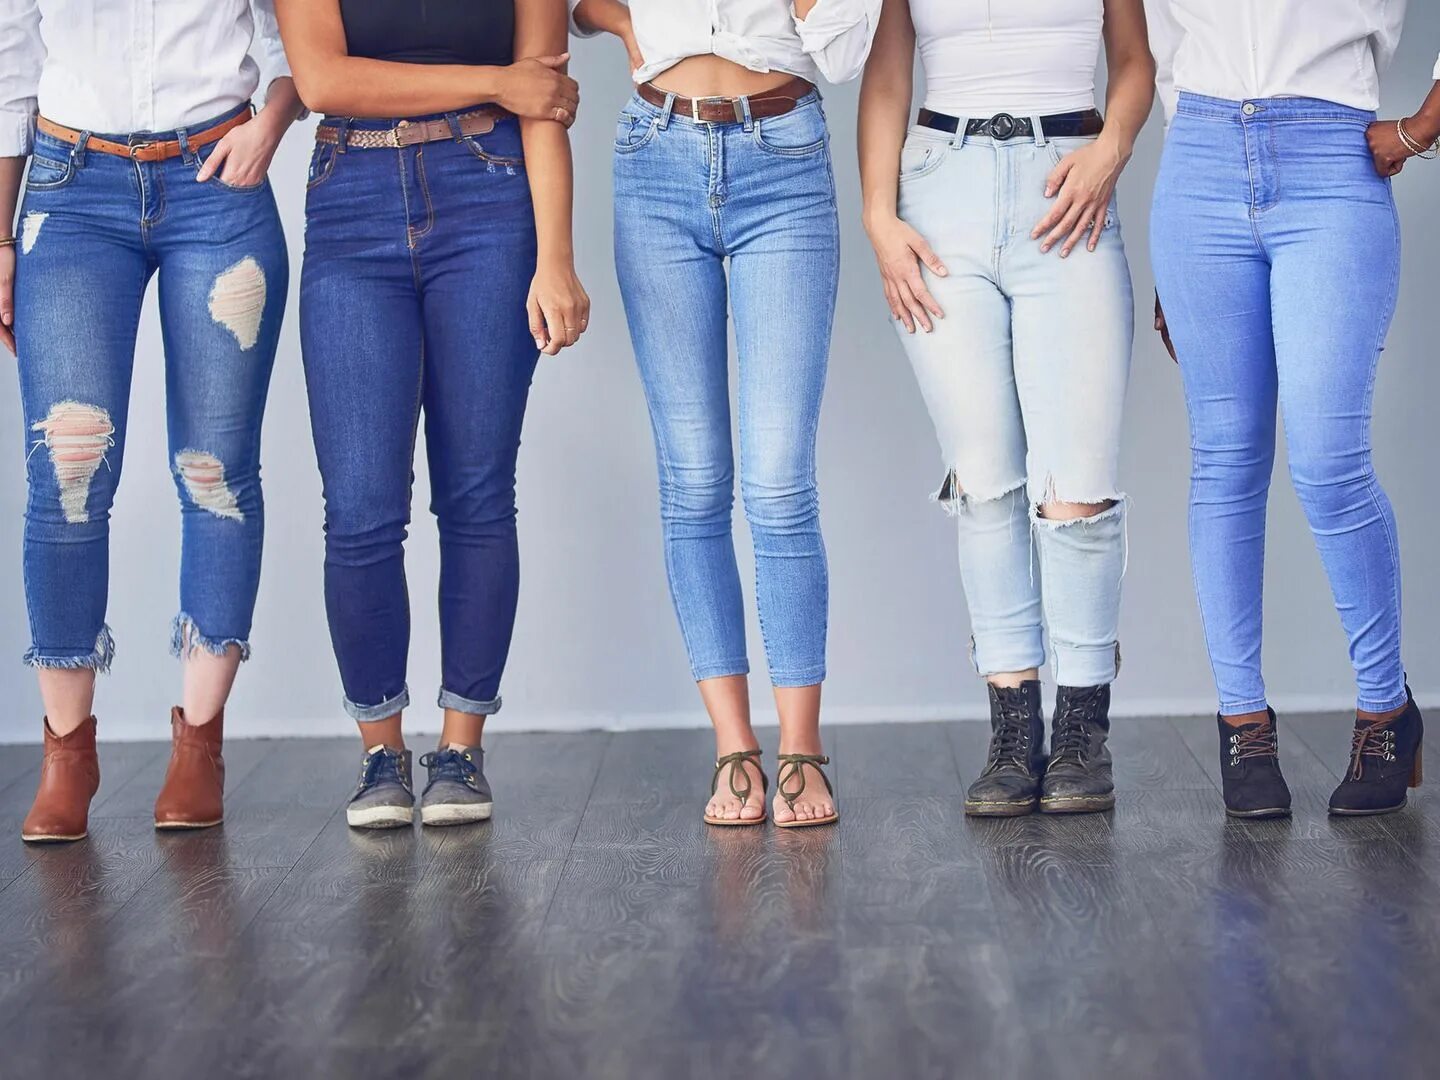 Джинсы. Джинсы женские. Девушка в джинсах. Джинсы женские модные.